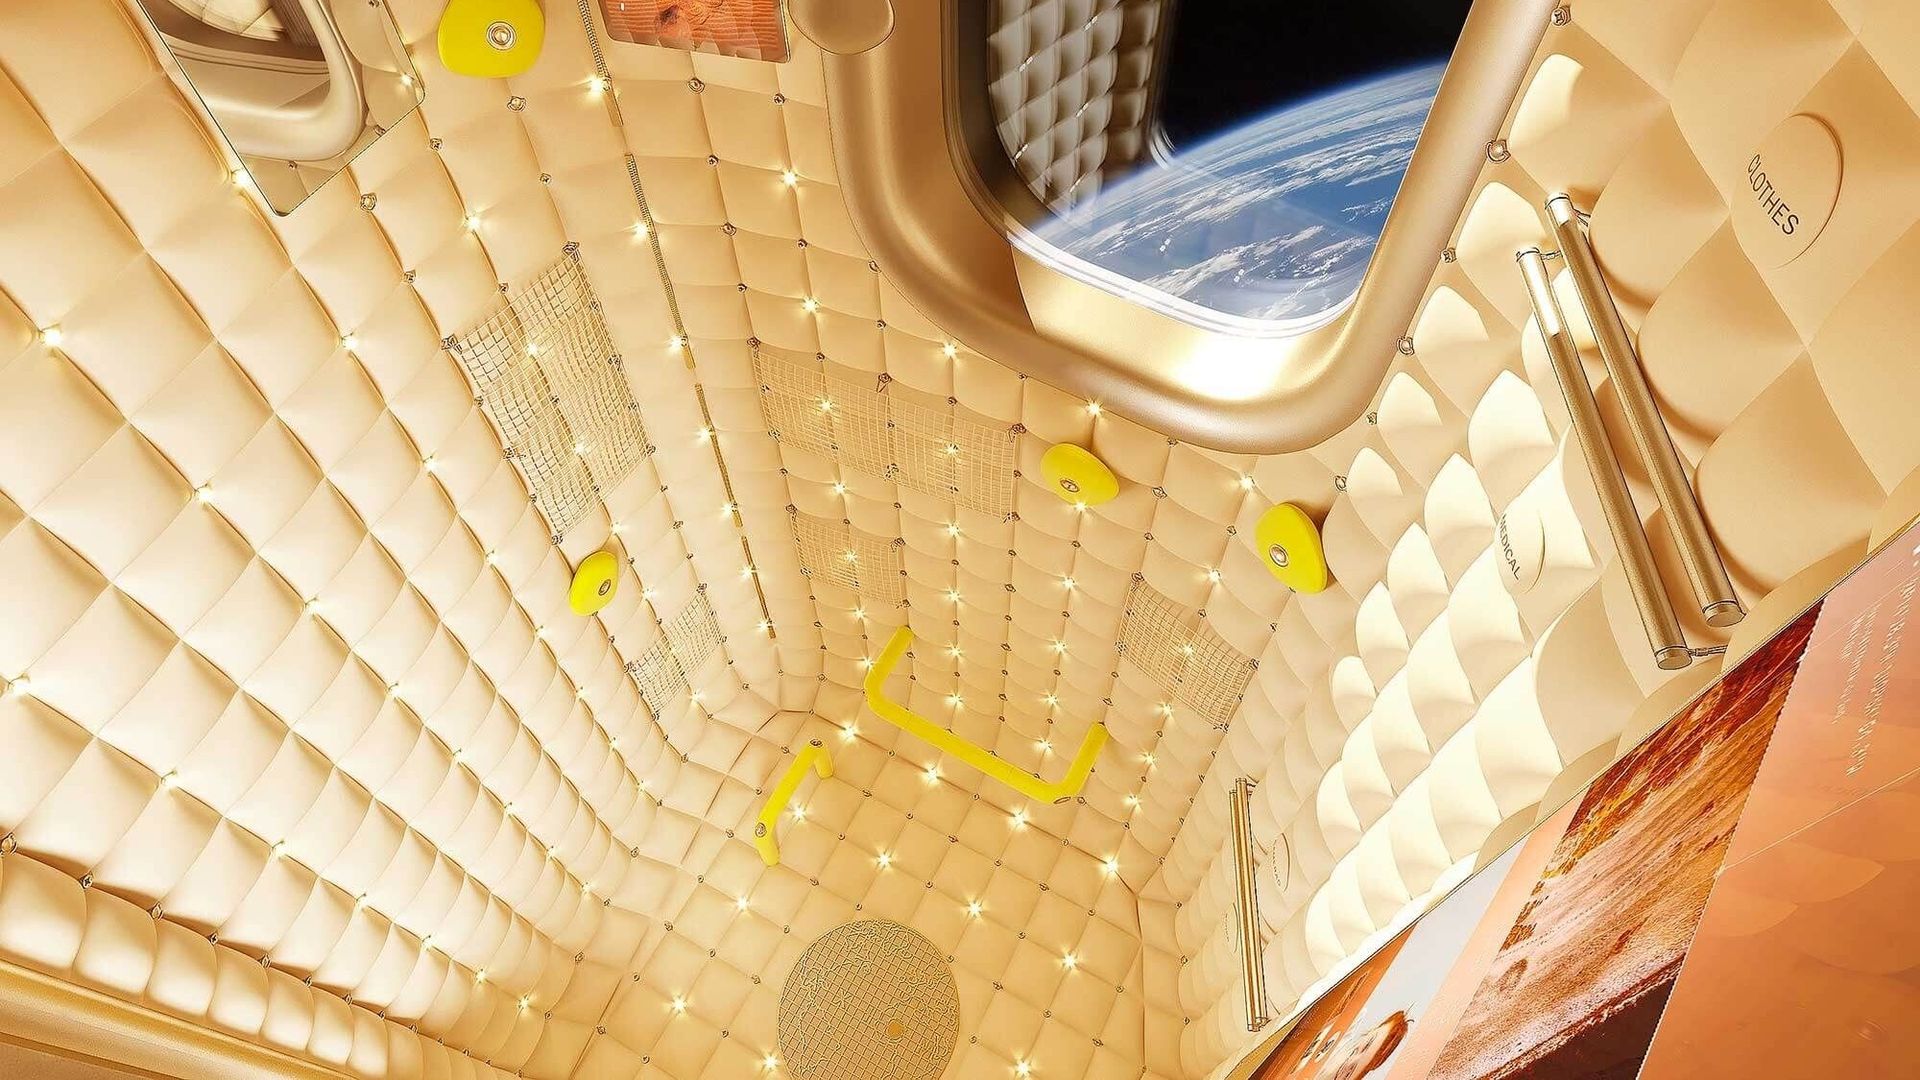 Le module habitable Axiom Space pourrait s'inspirer de ce design de Philippe Starck.